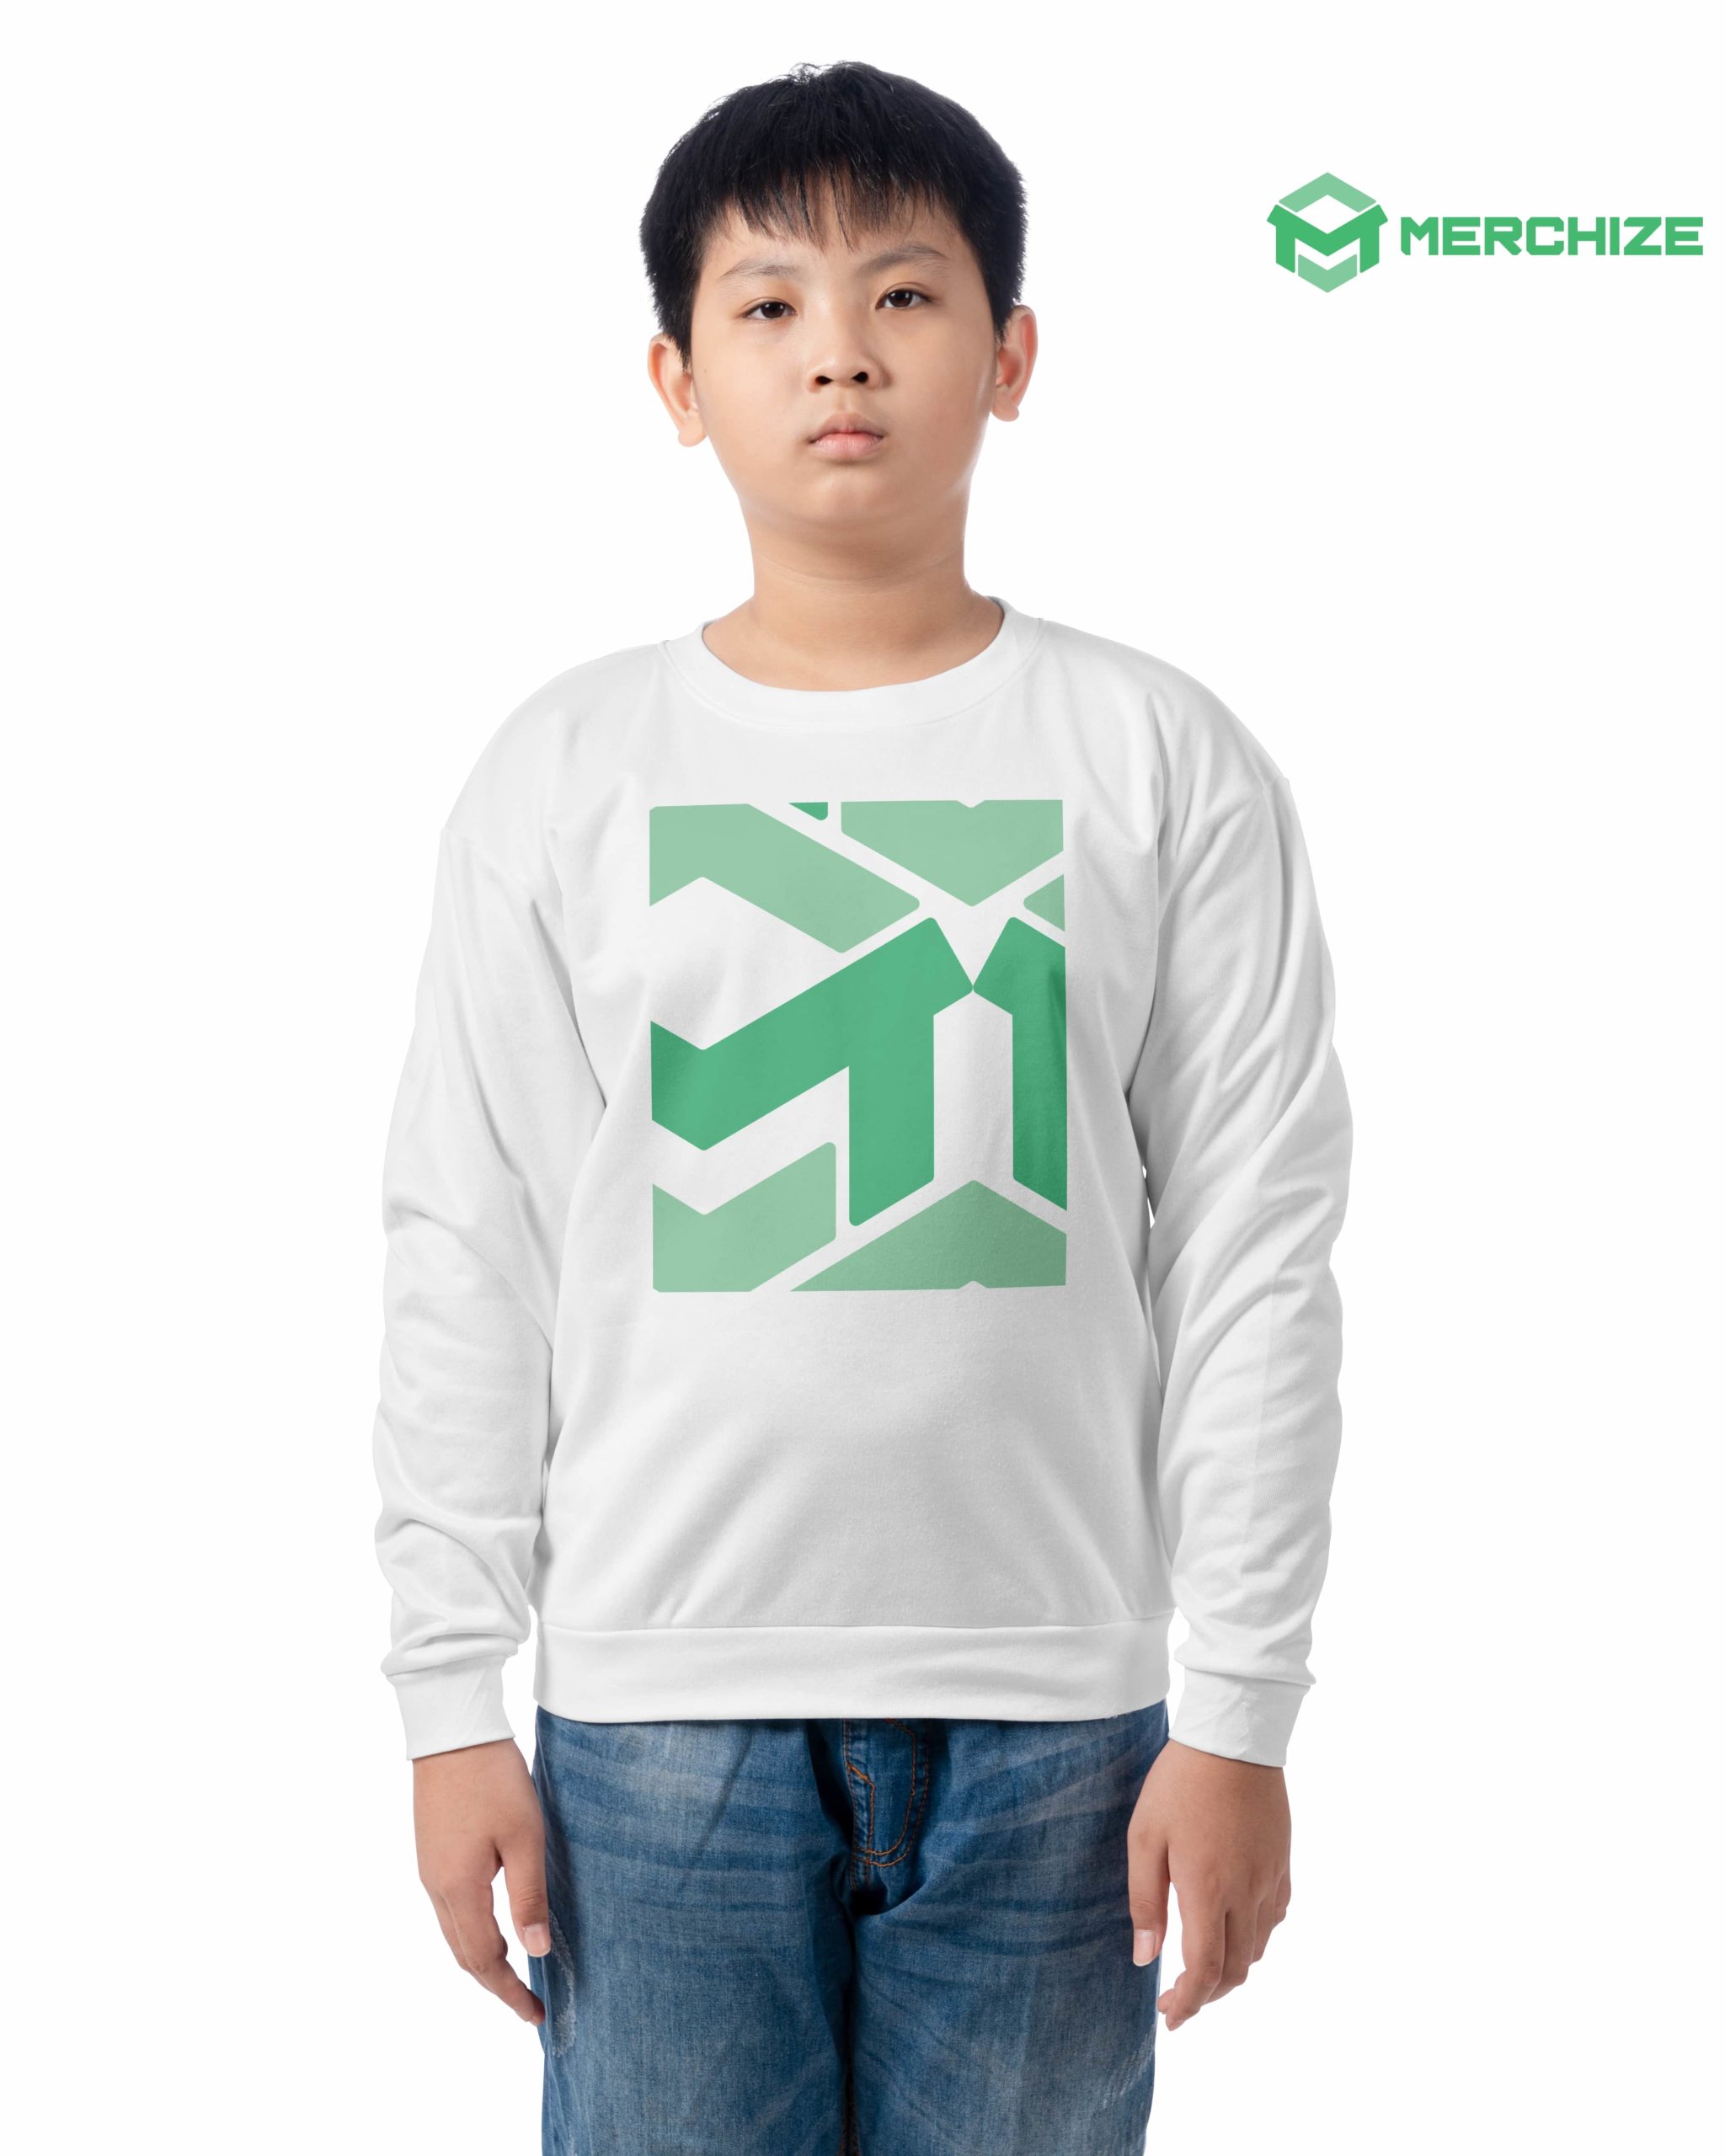 Youth Sweatshirt (Made in EU)